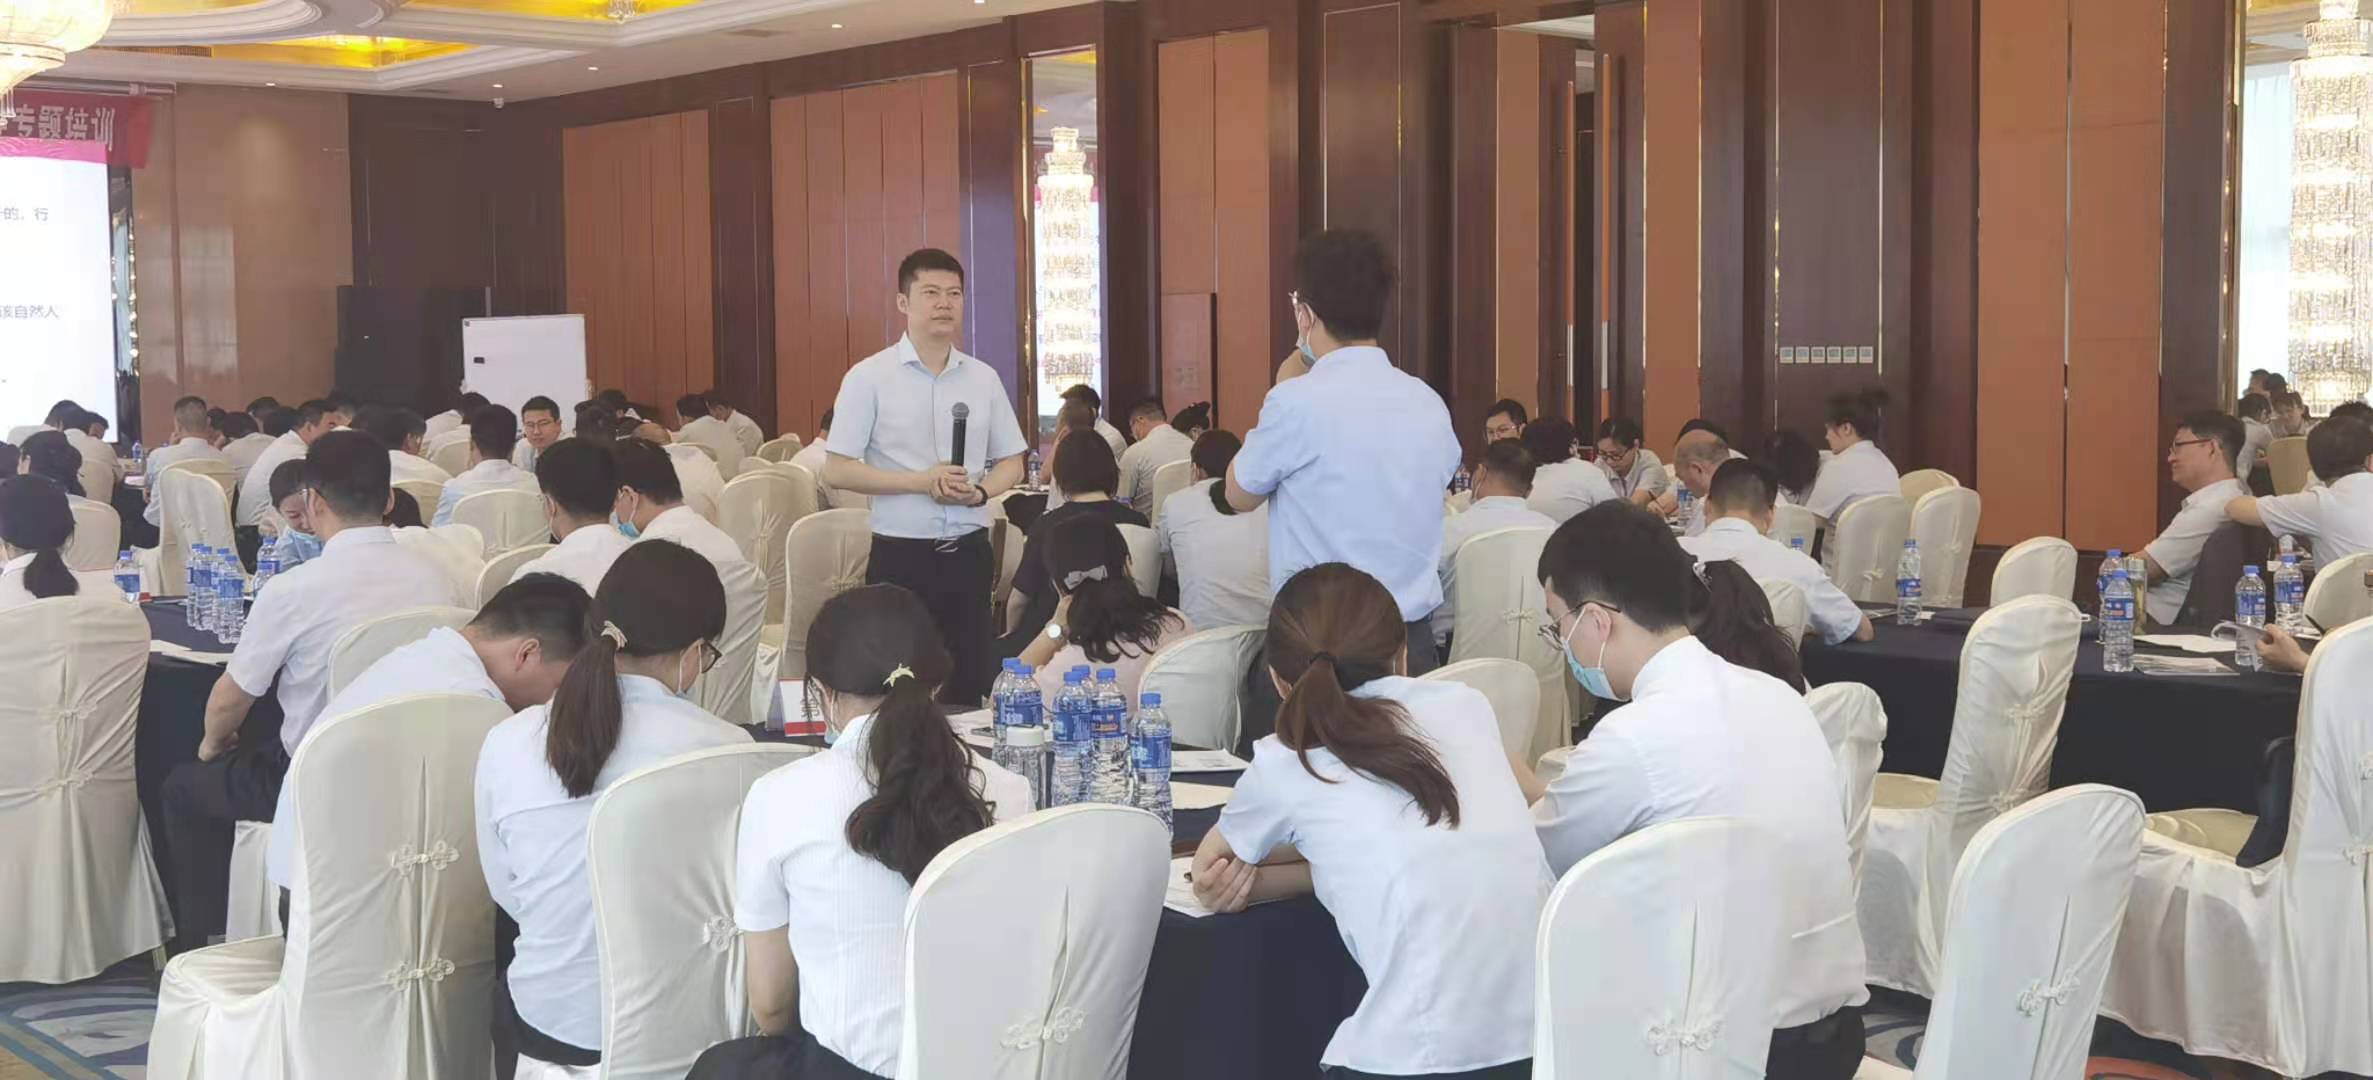 包亮老师受邀在6月19-20号为上海某银行讲授《极限挑战——银行投诉处理与应对》课程